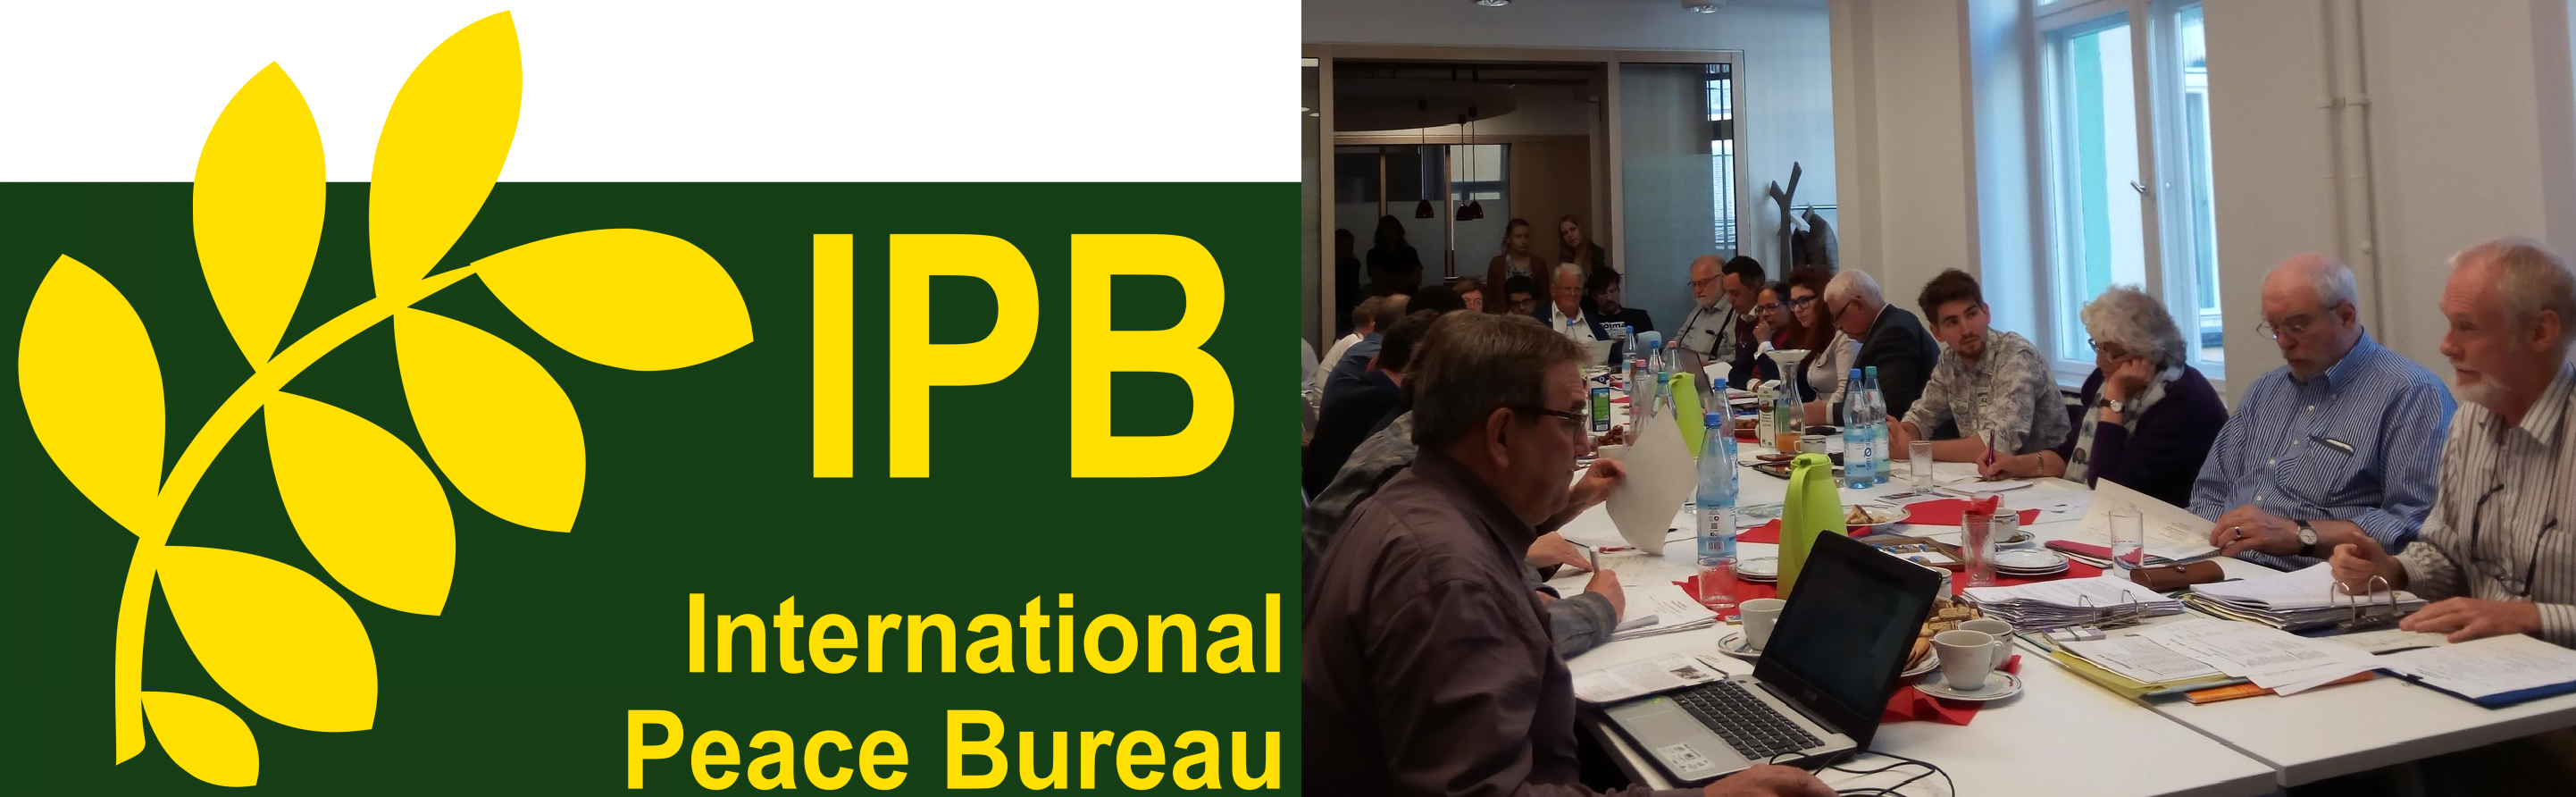 cropped-IPB-logo3